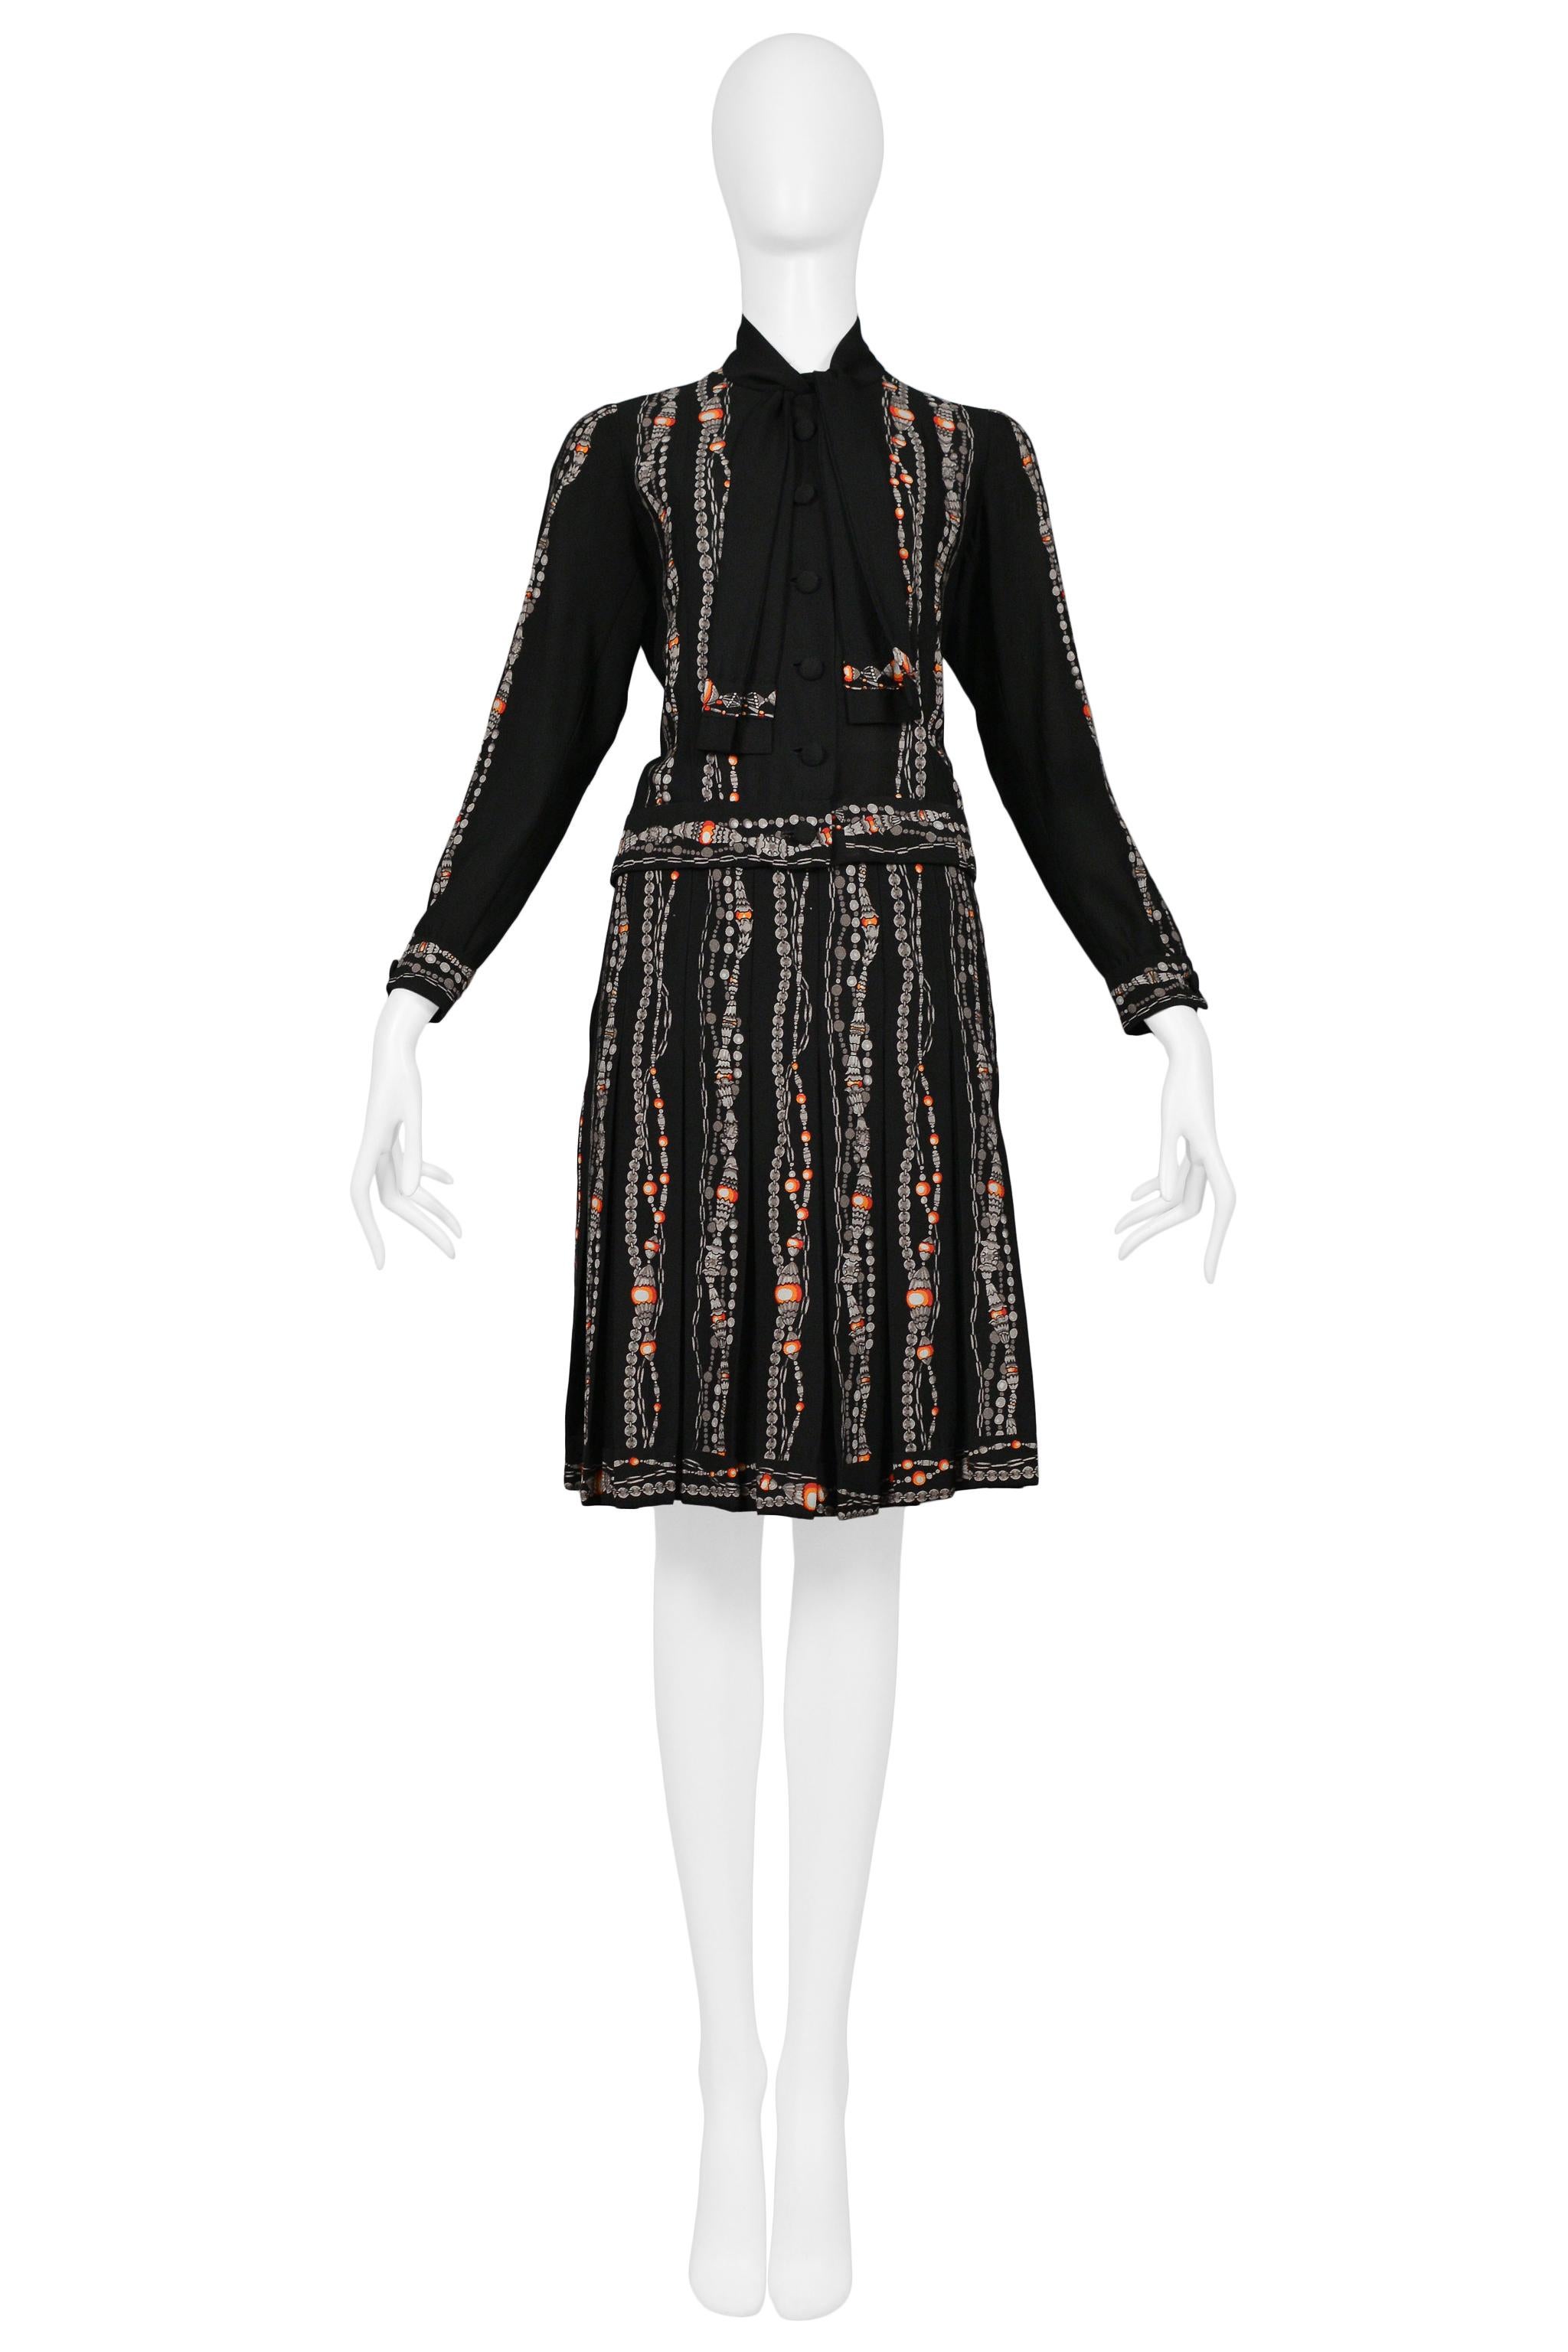 Resurrection Vintage a le plaisir de vous proposer un tailleur jupe noir vintage Chanel by Karl Lagerfeld avec veste boutonnée, collier à nœud, boutons recouverts, impression iconique de collier de perles et de perles, poids intérieur en chaîne